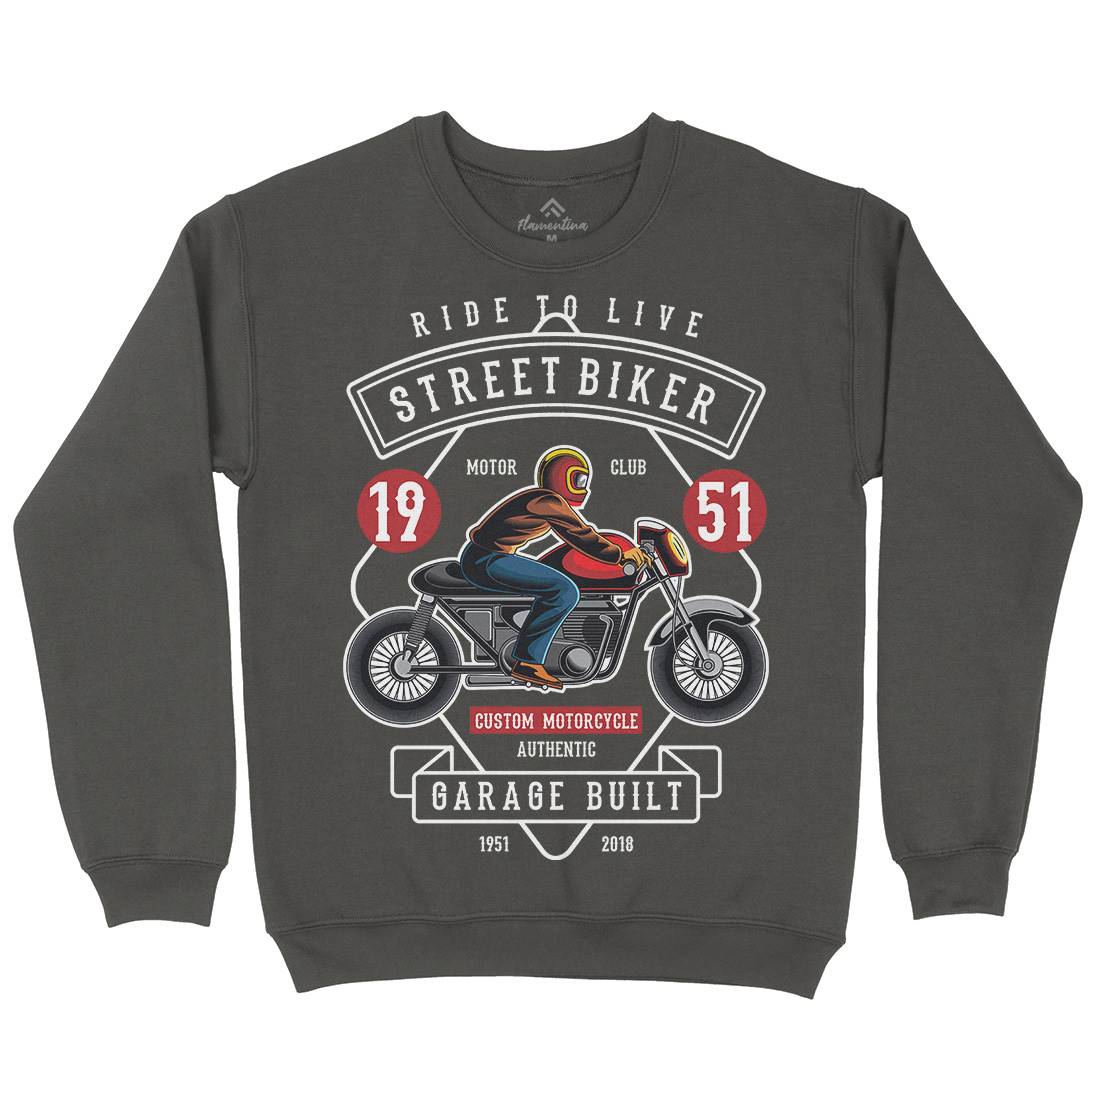 Street Biker Kids Crew Neck Sweatshirt Motorcycles C453